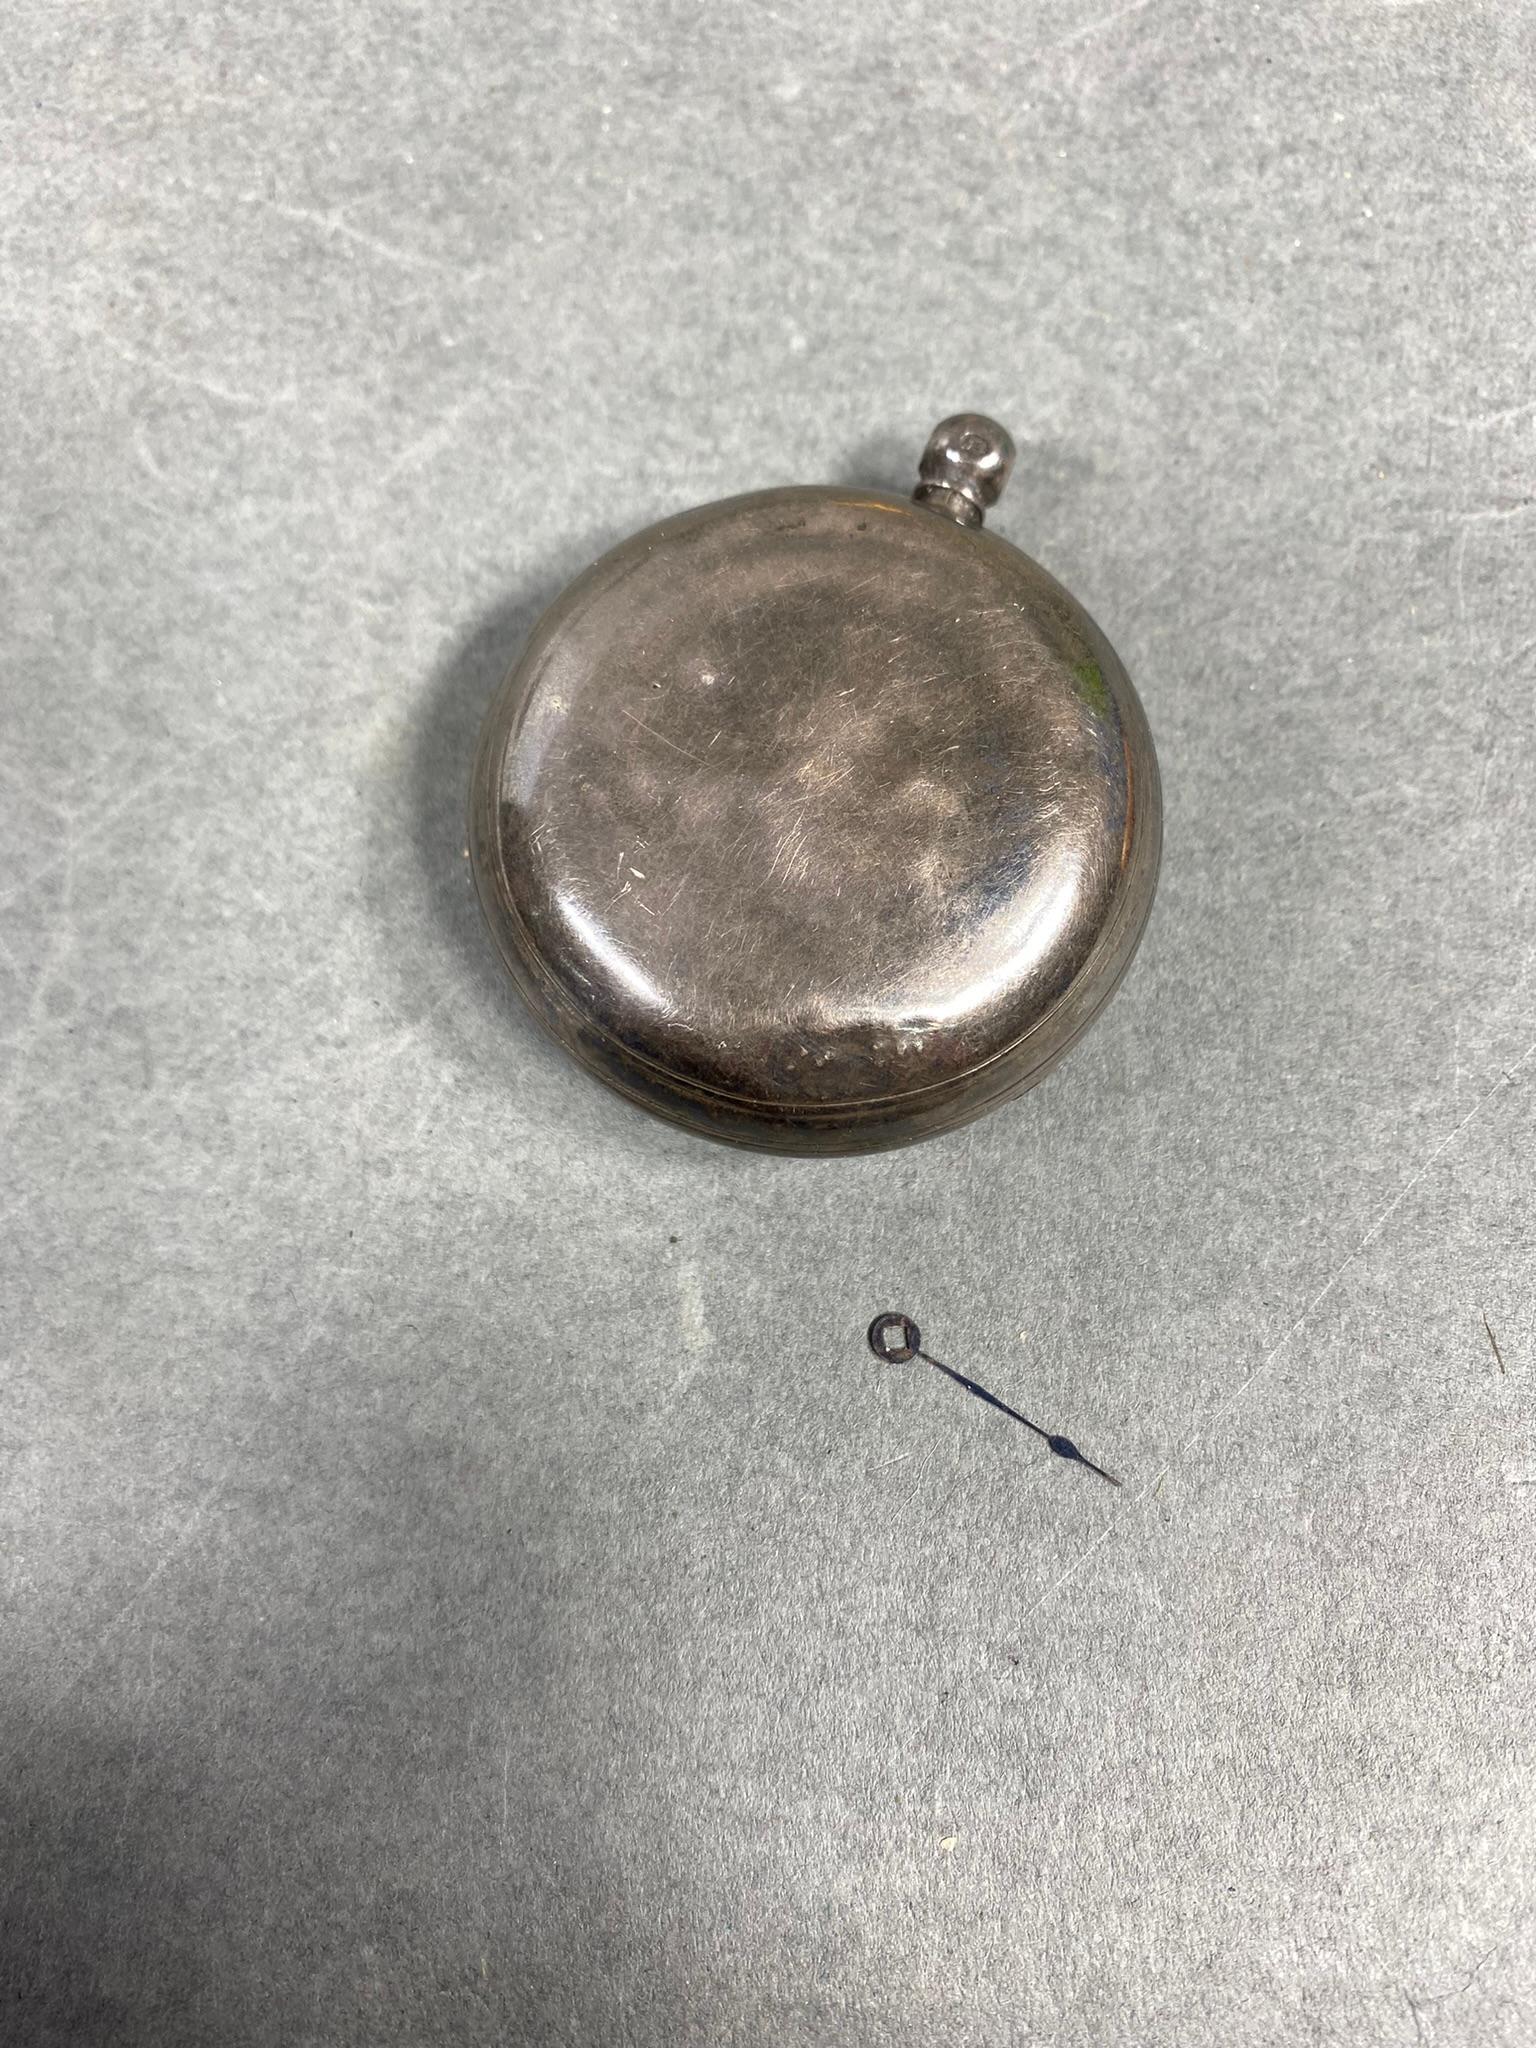 Early Antique Key Wind Pocket Watch Silver Case